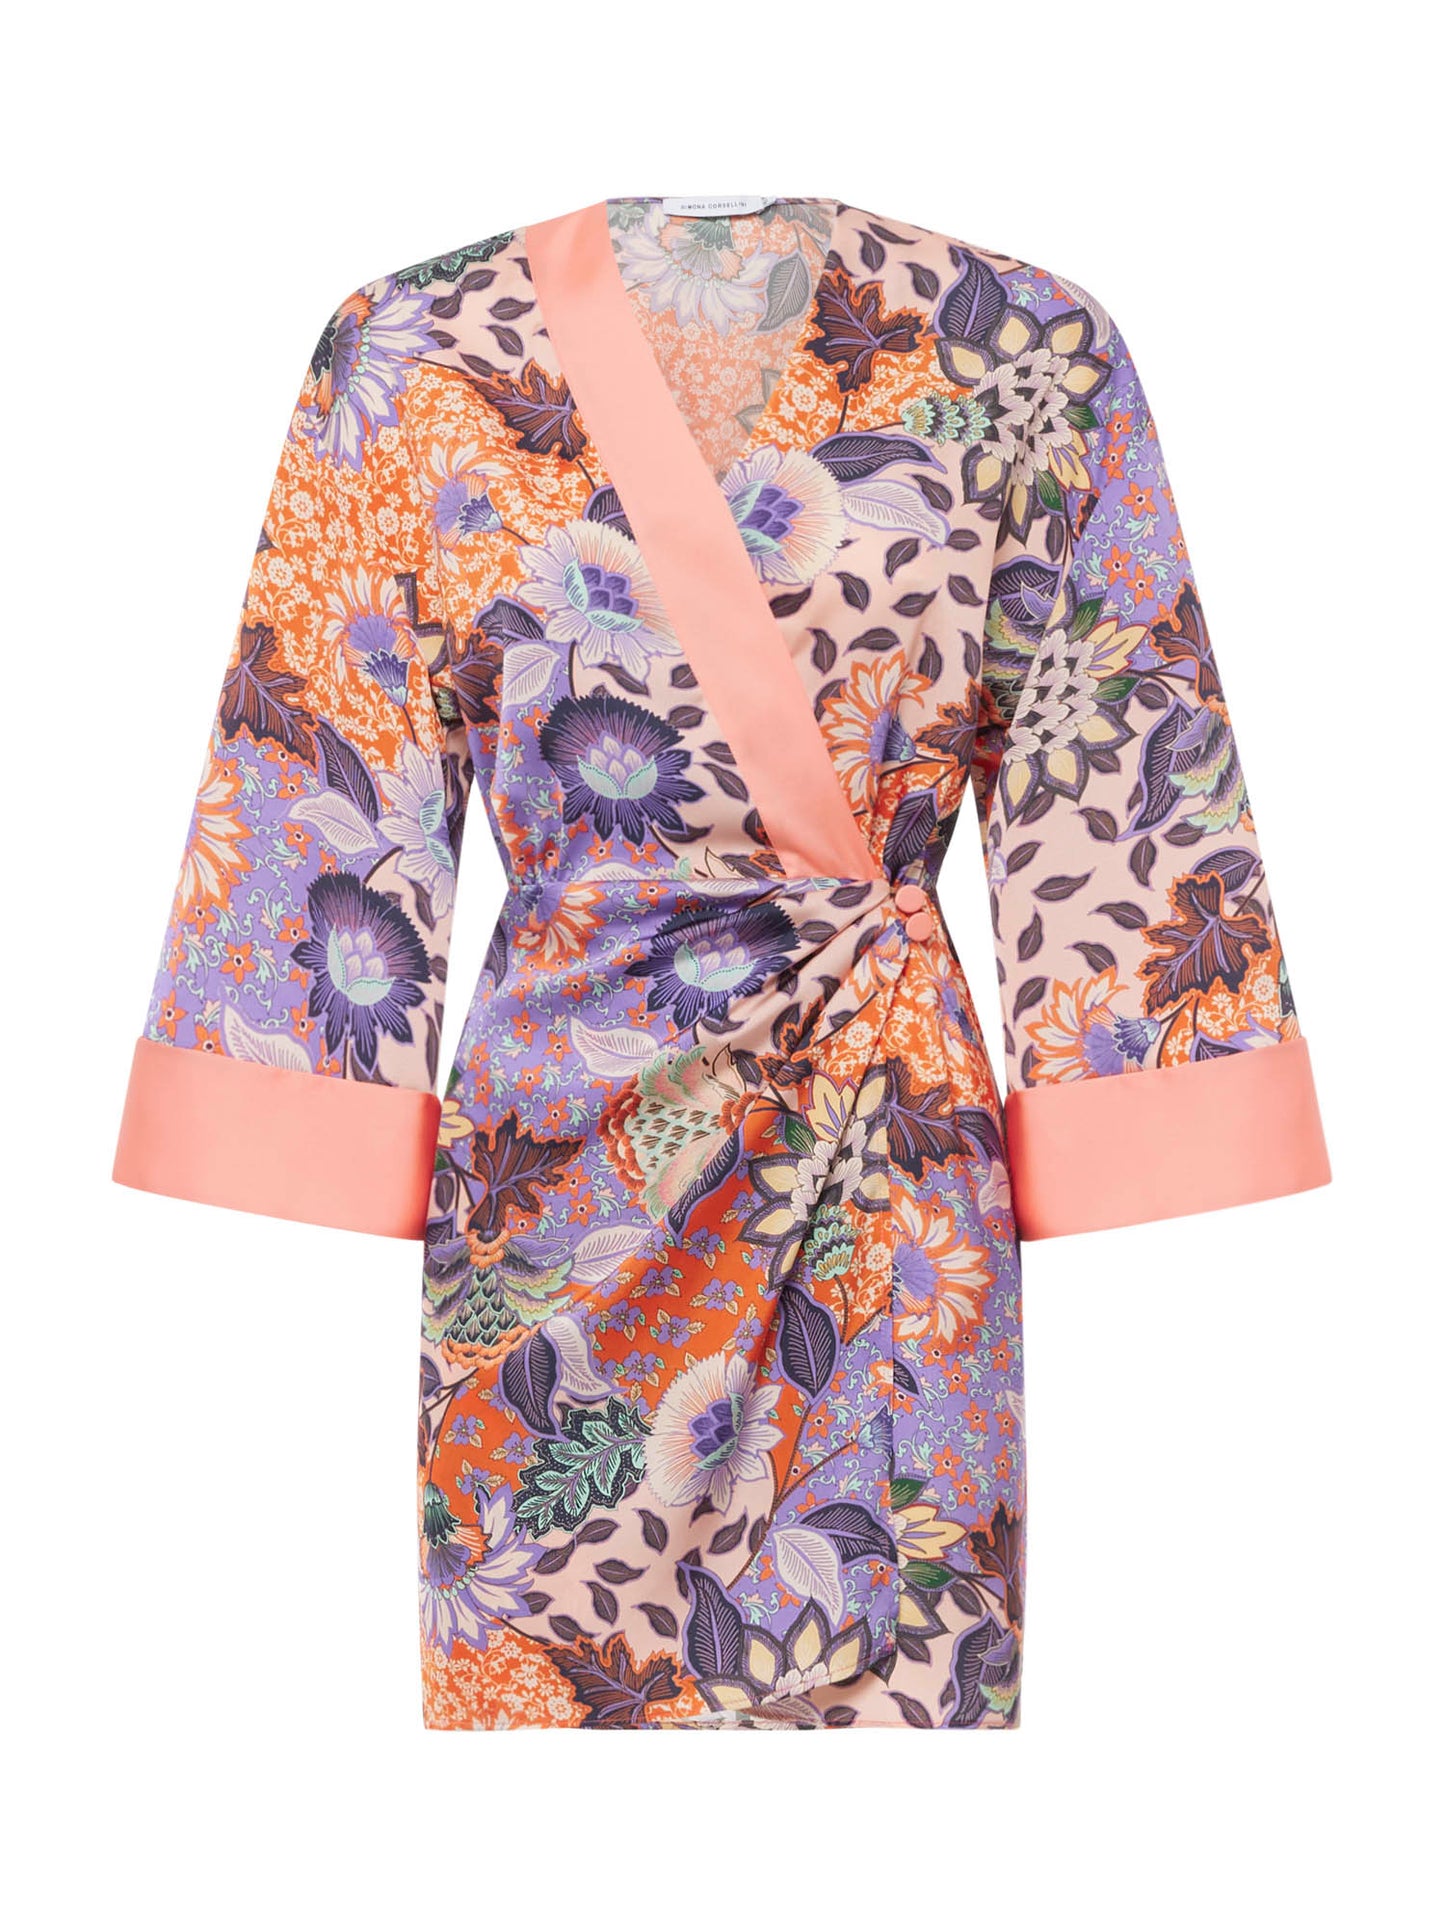 Floral kimono print short dress